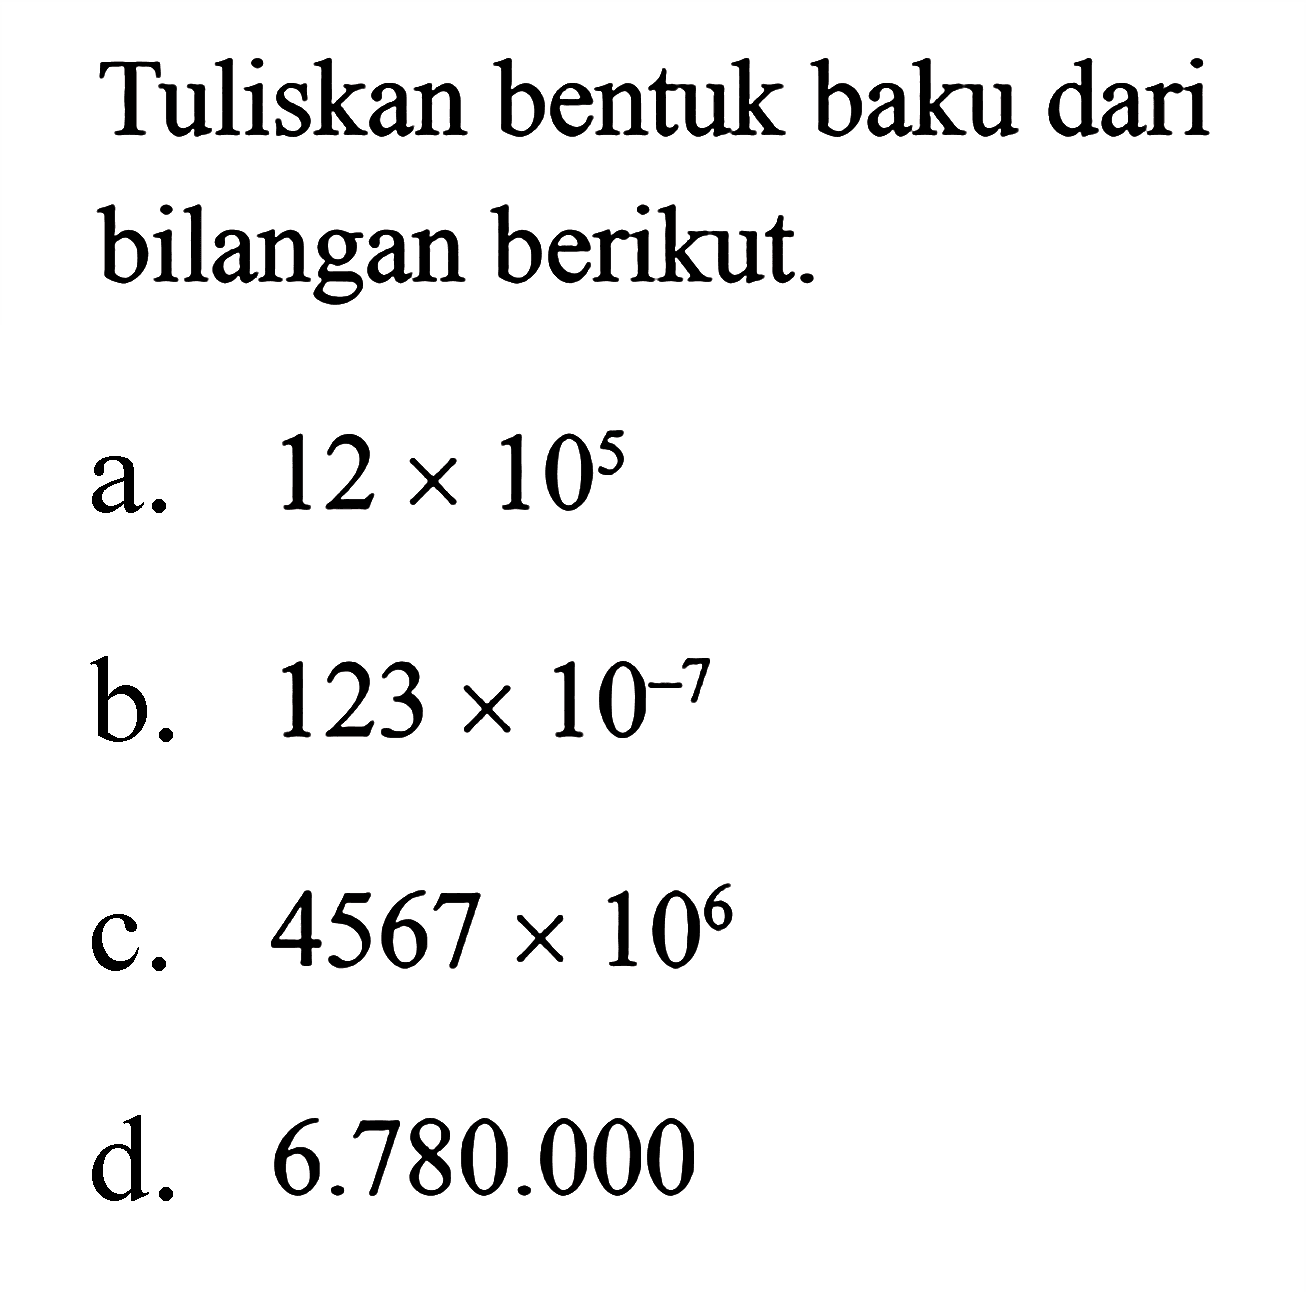 Tuliskan bentuk baku dari bilangan berikut. a. 12 x 10^5 b. 123 x 10^-7 c. 4567 x 10^6 d. 6.780.000